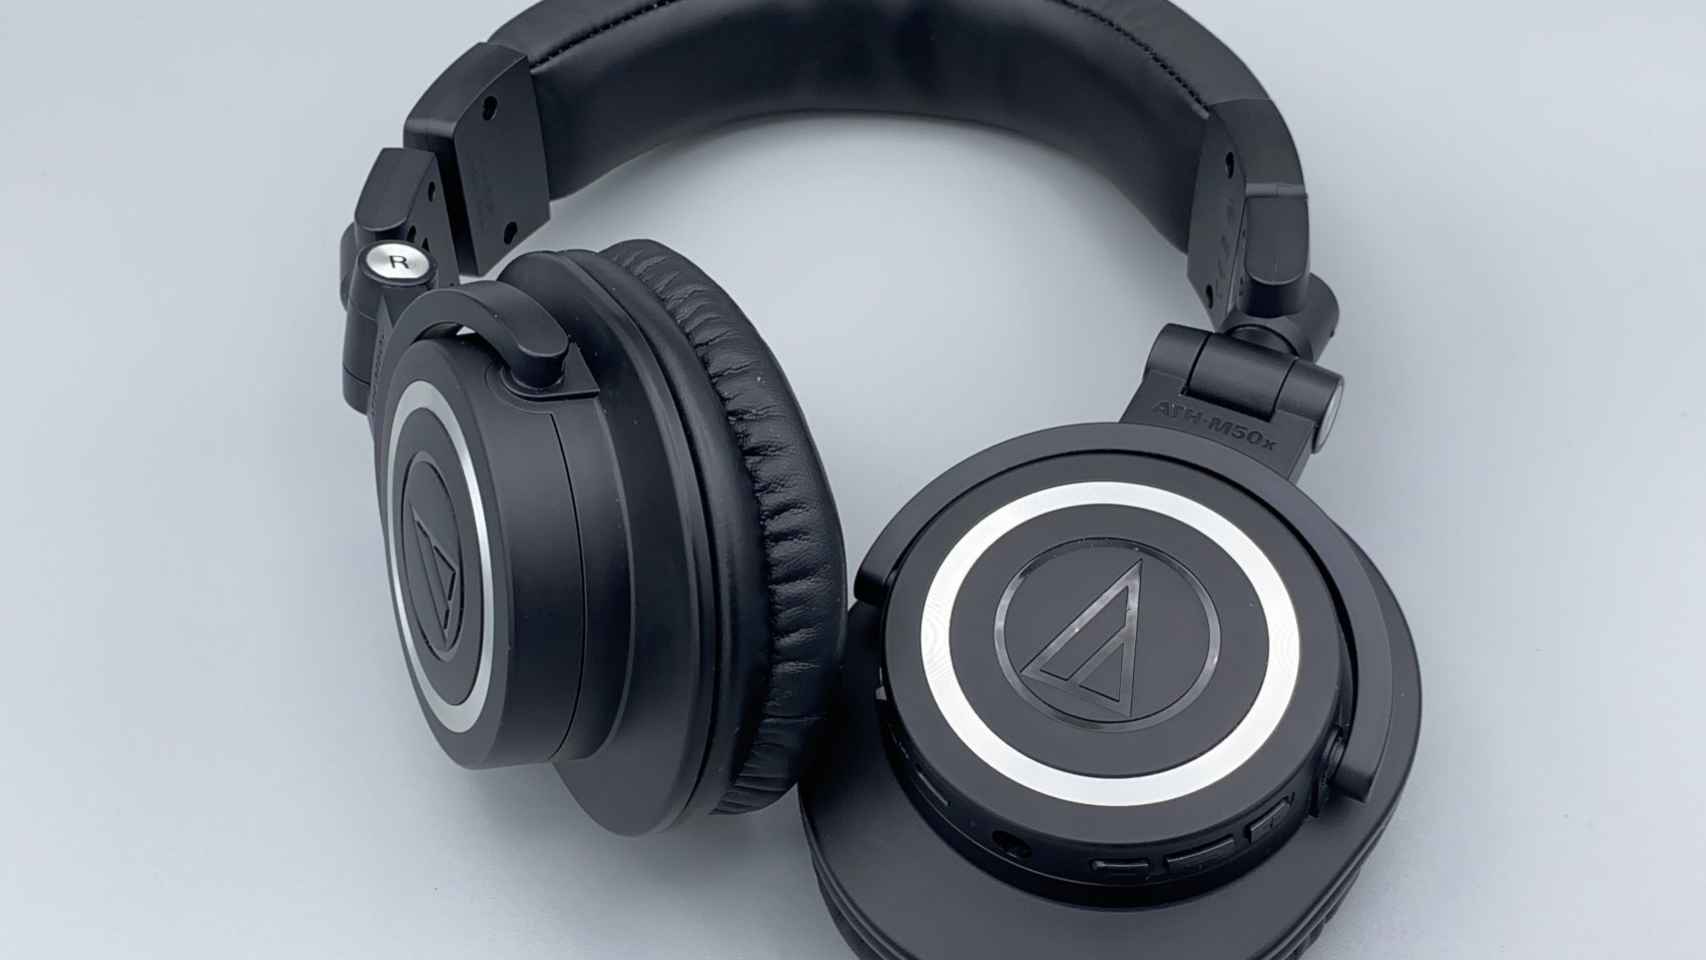 Audio Technica lanza una versión exclusiva de sus auriculares más populares